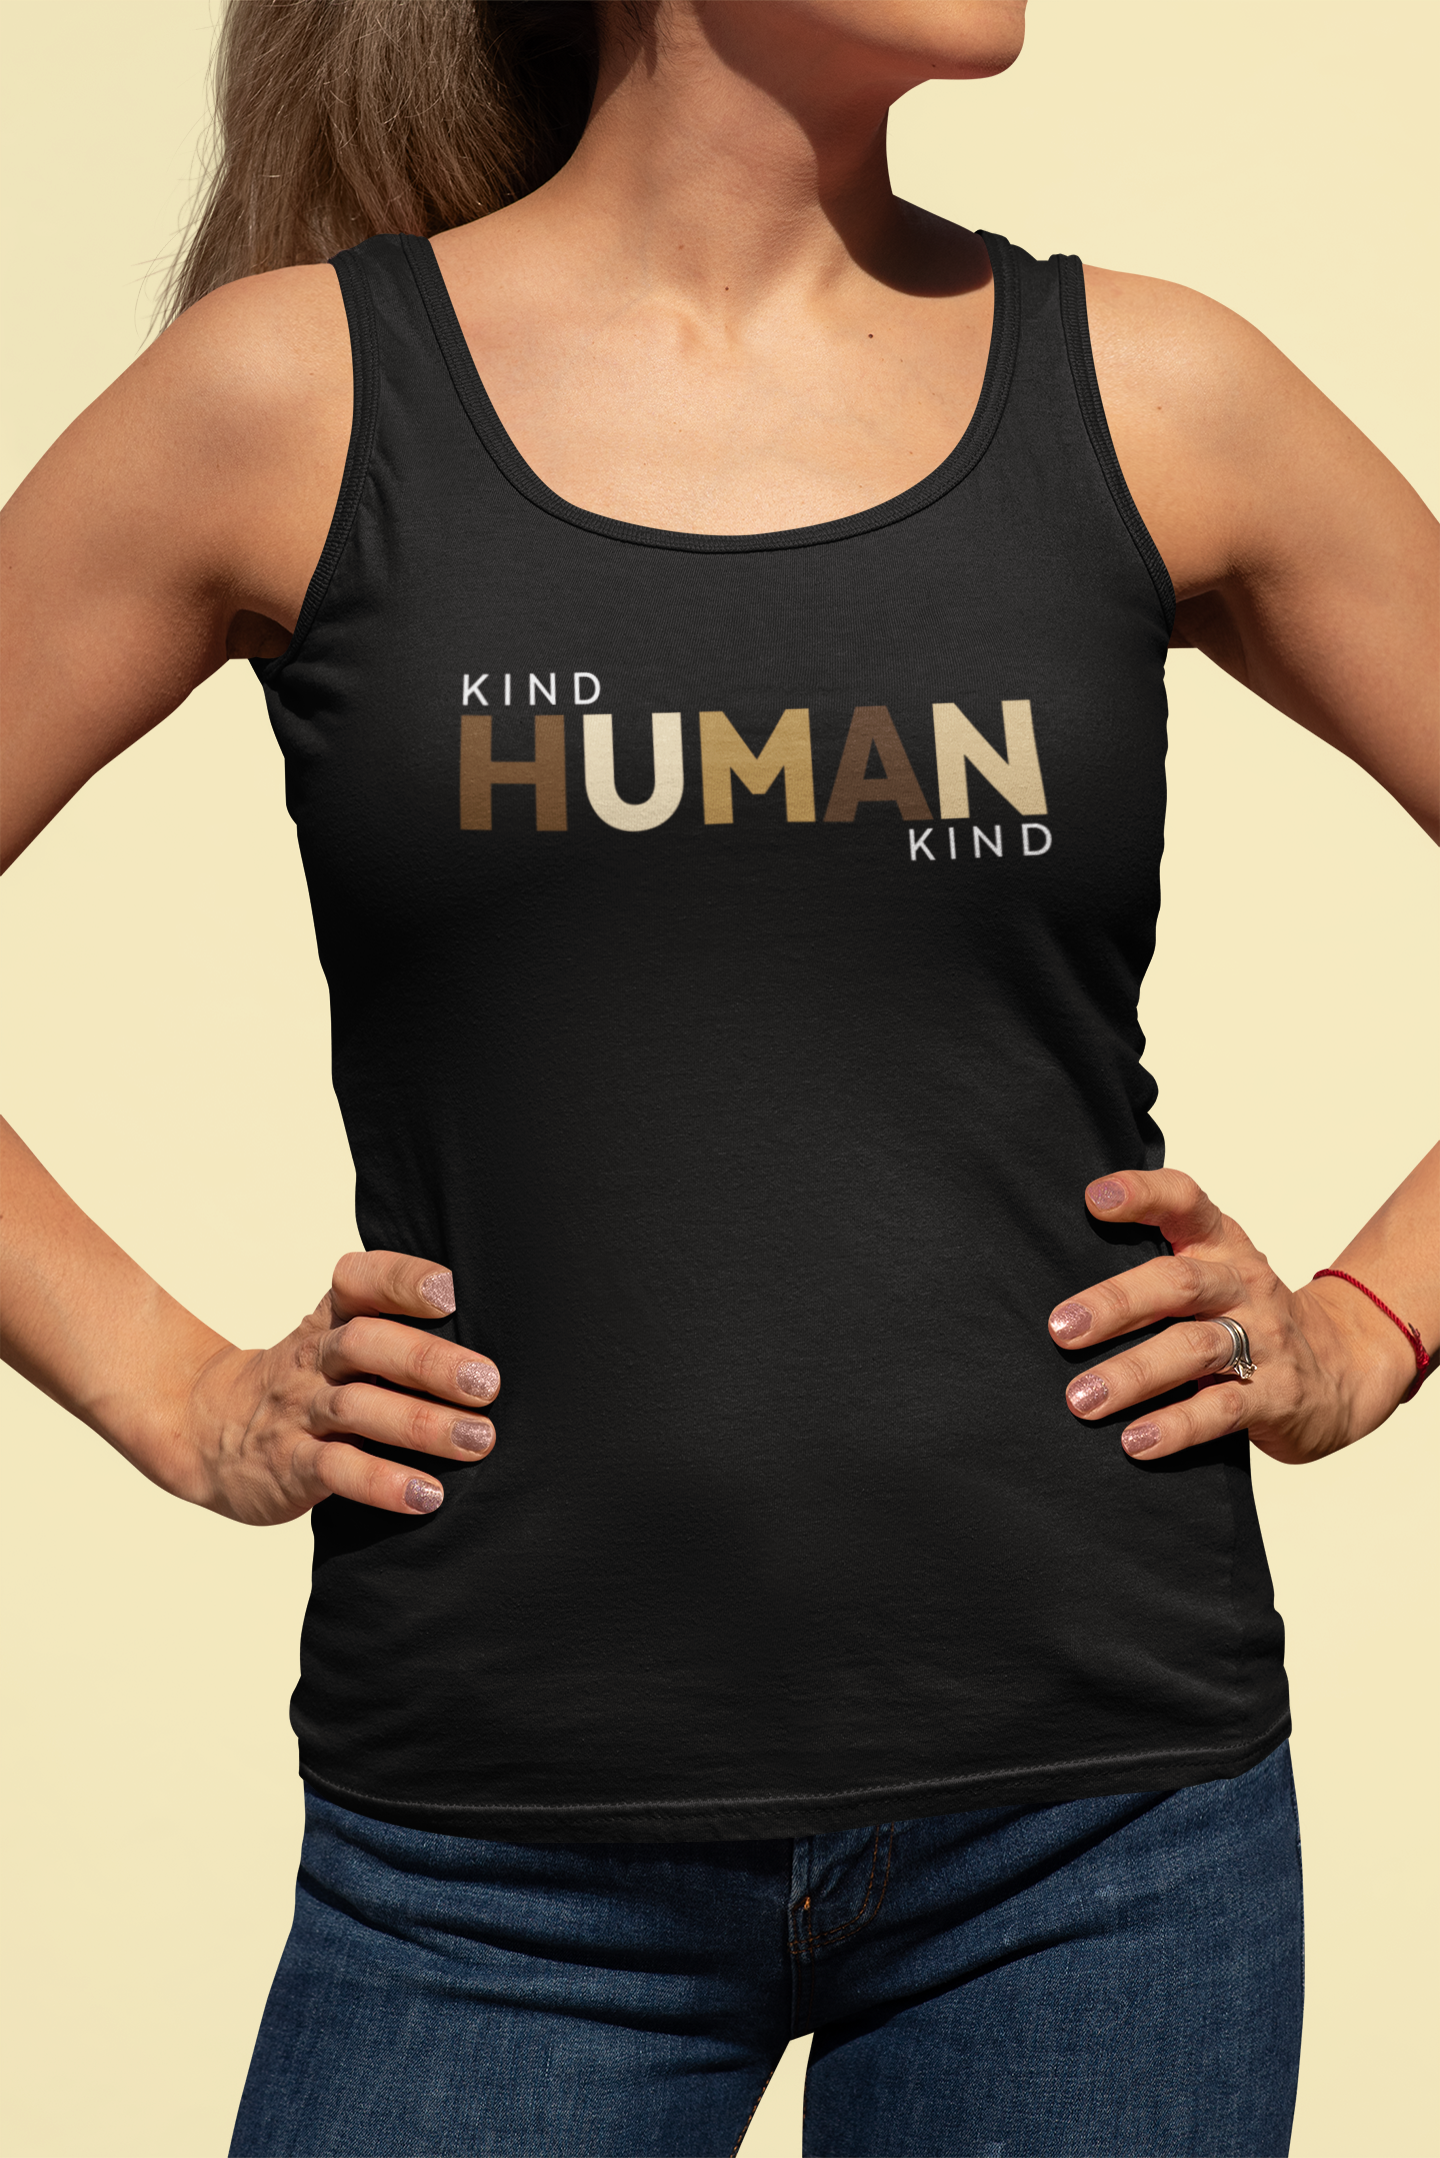 Kind Human Kind - Unisex Tank Top